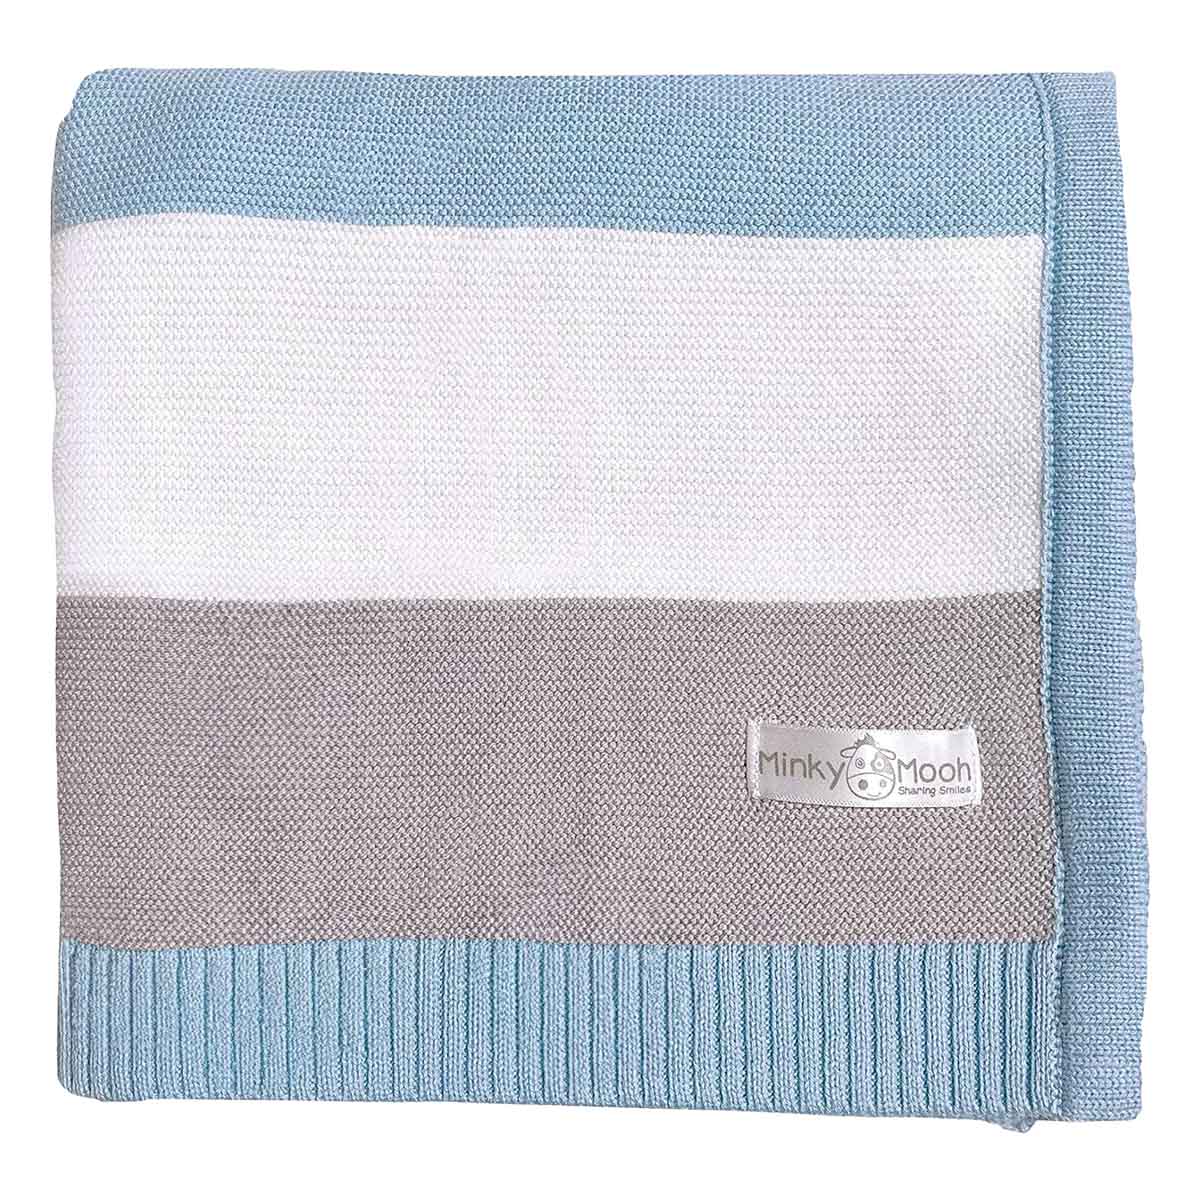 Flach liegende, blau-grau-weiße gestreifte Bio-Baumwolldecke mit Minky Mooh Markenetikett auf weißem Hintergrund.